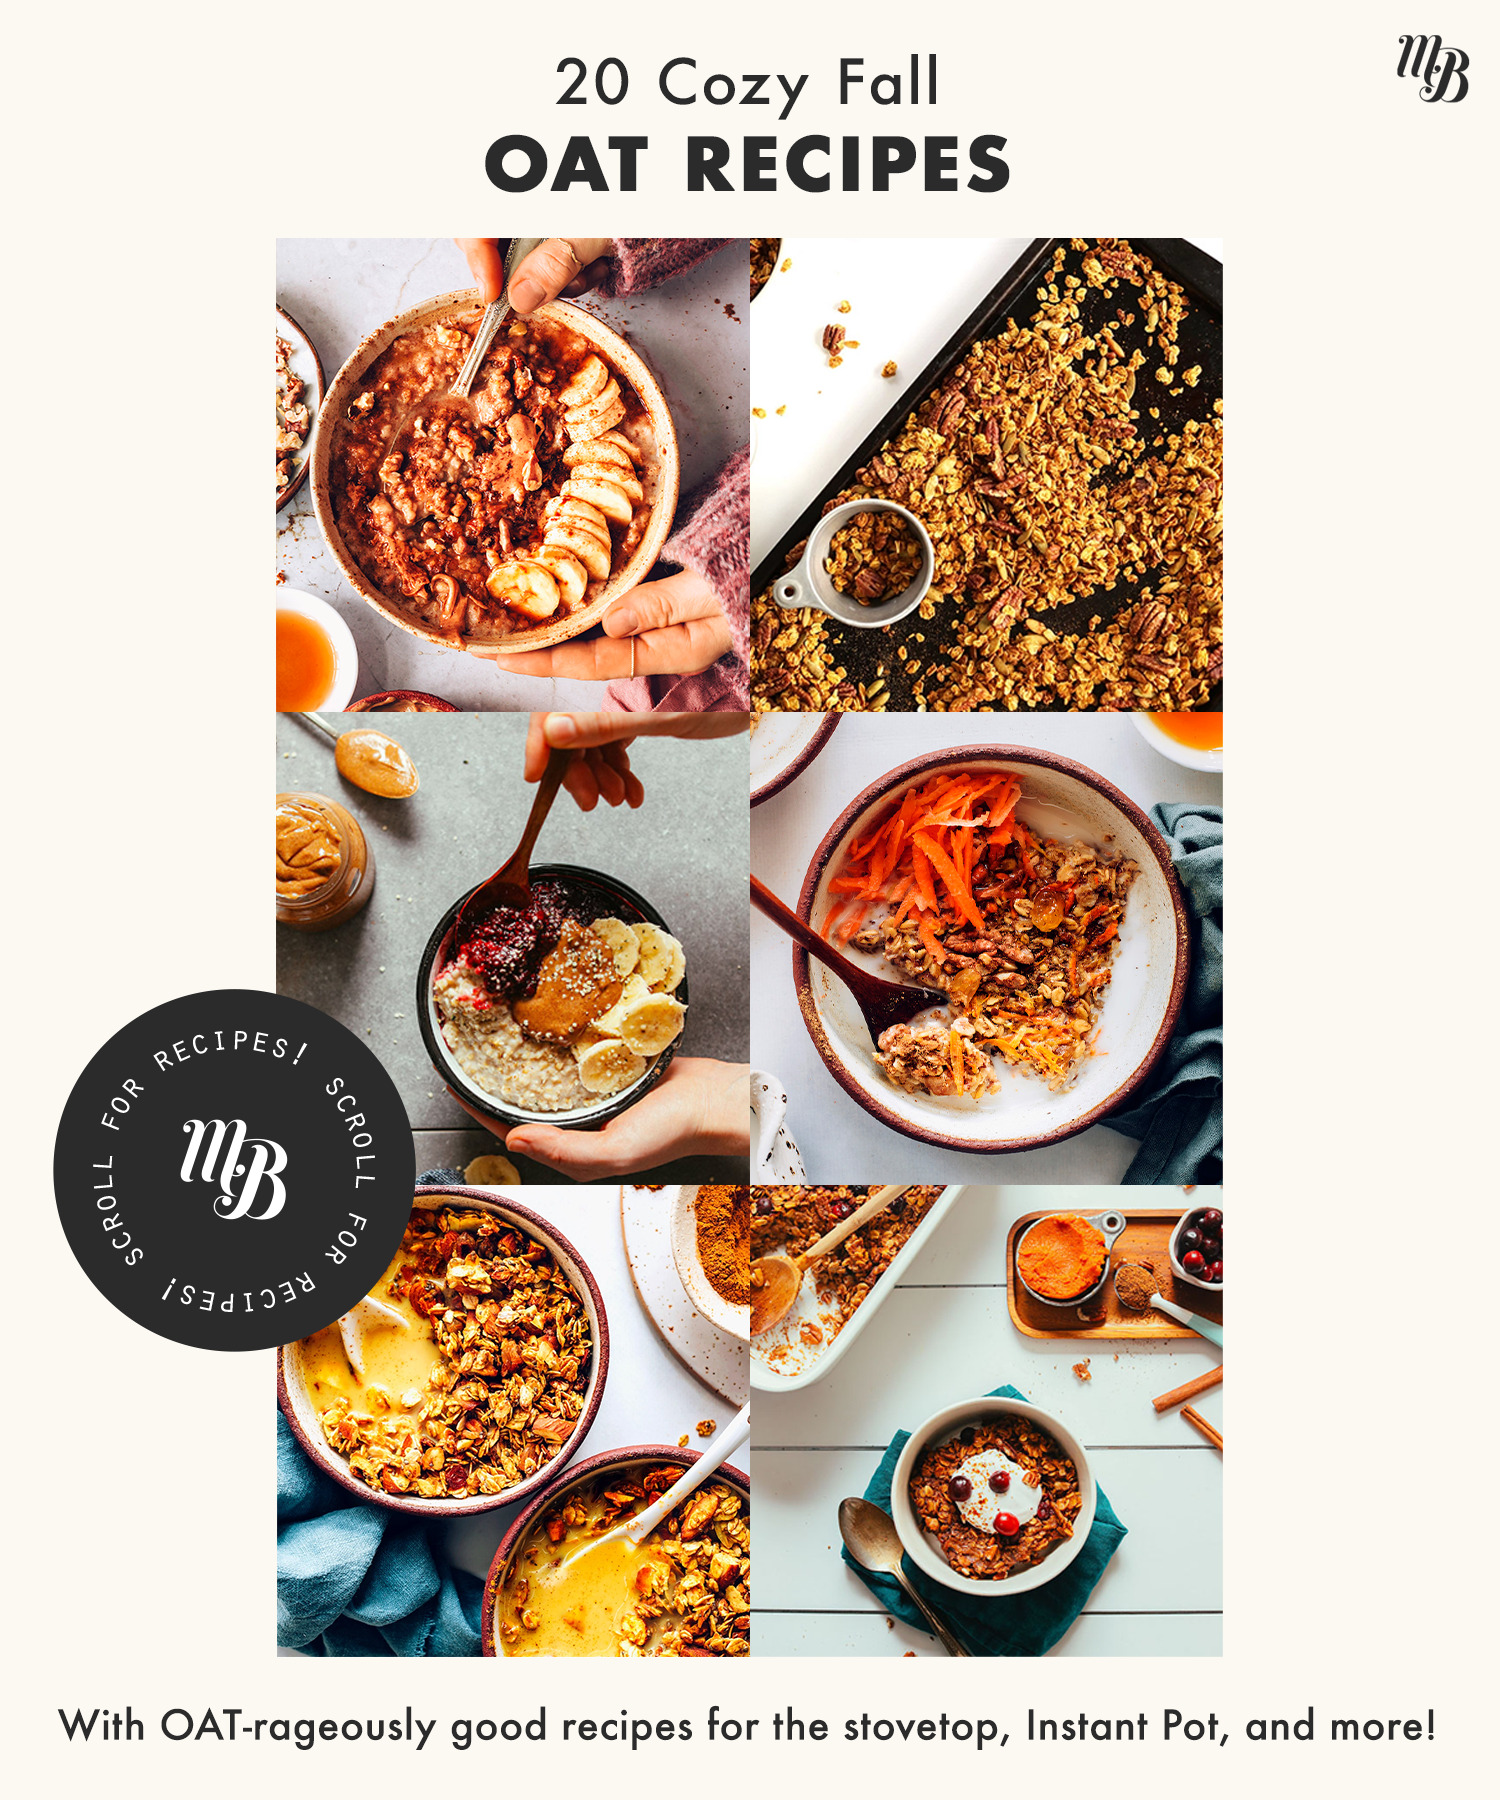 Assortment of photos of cozy oat recipes